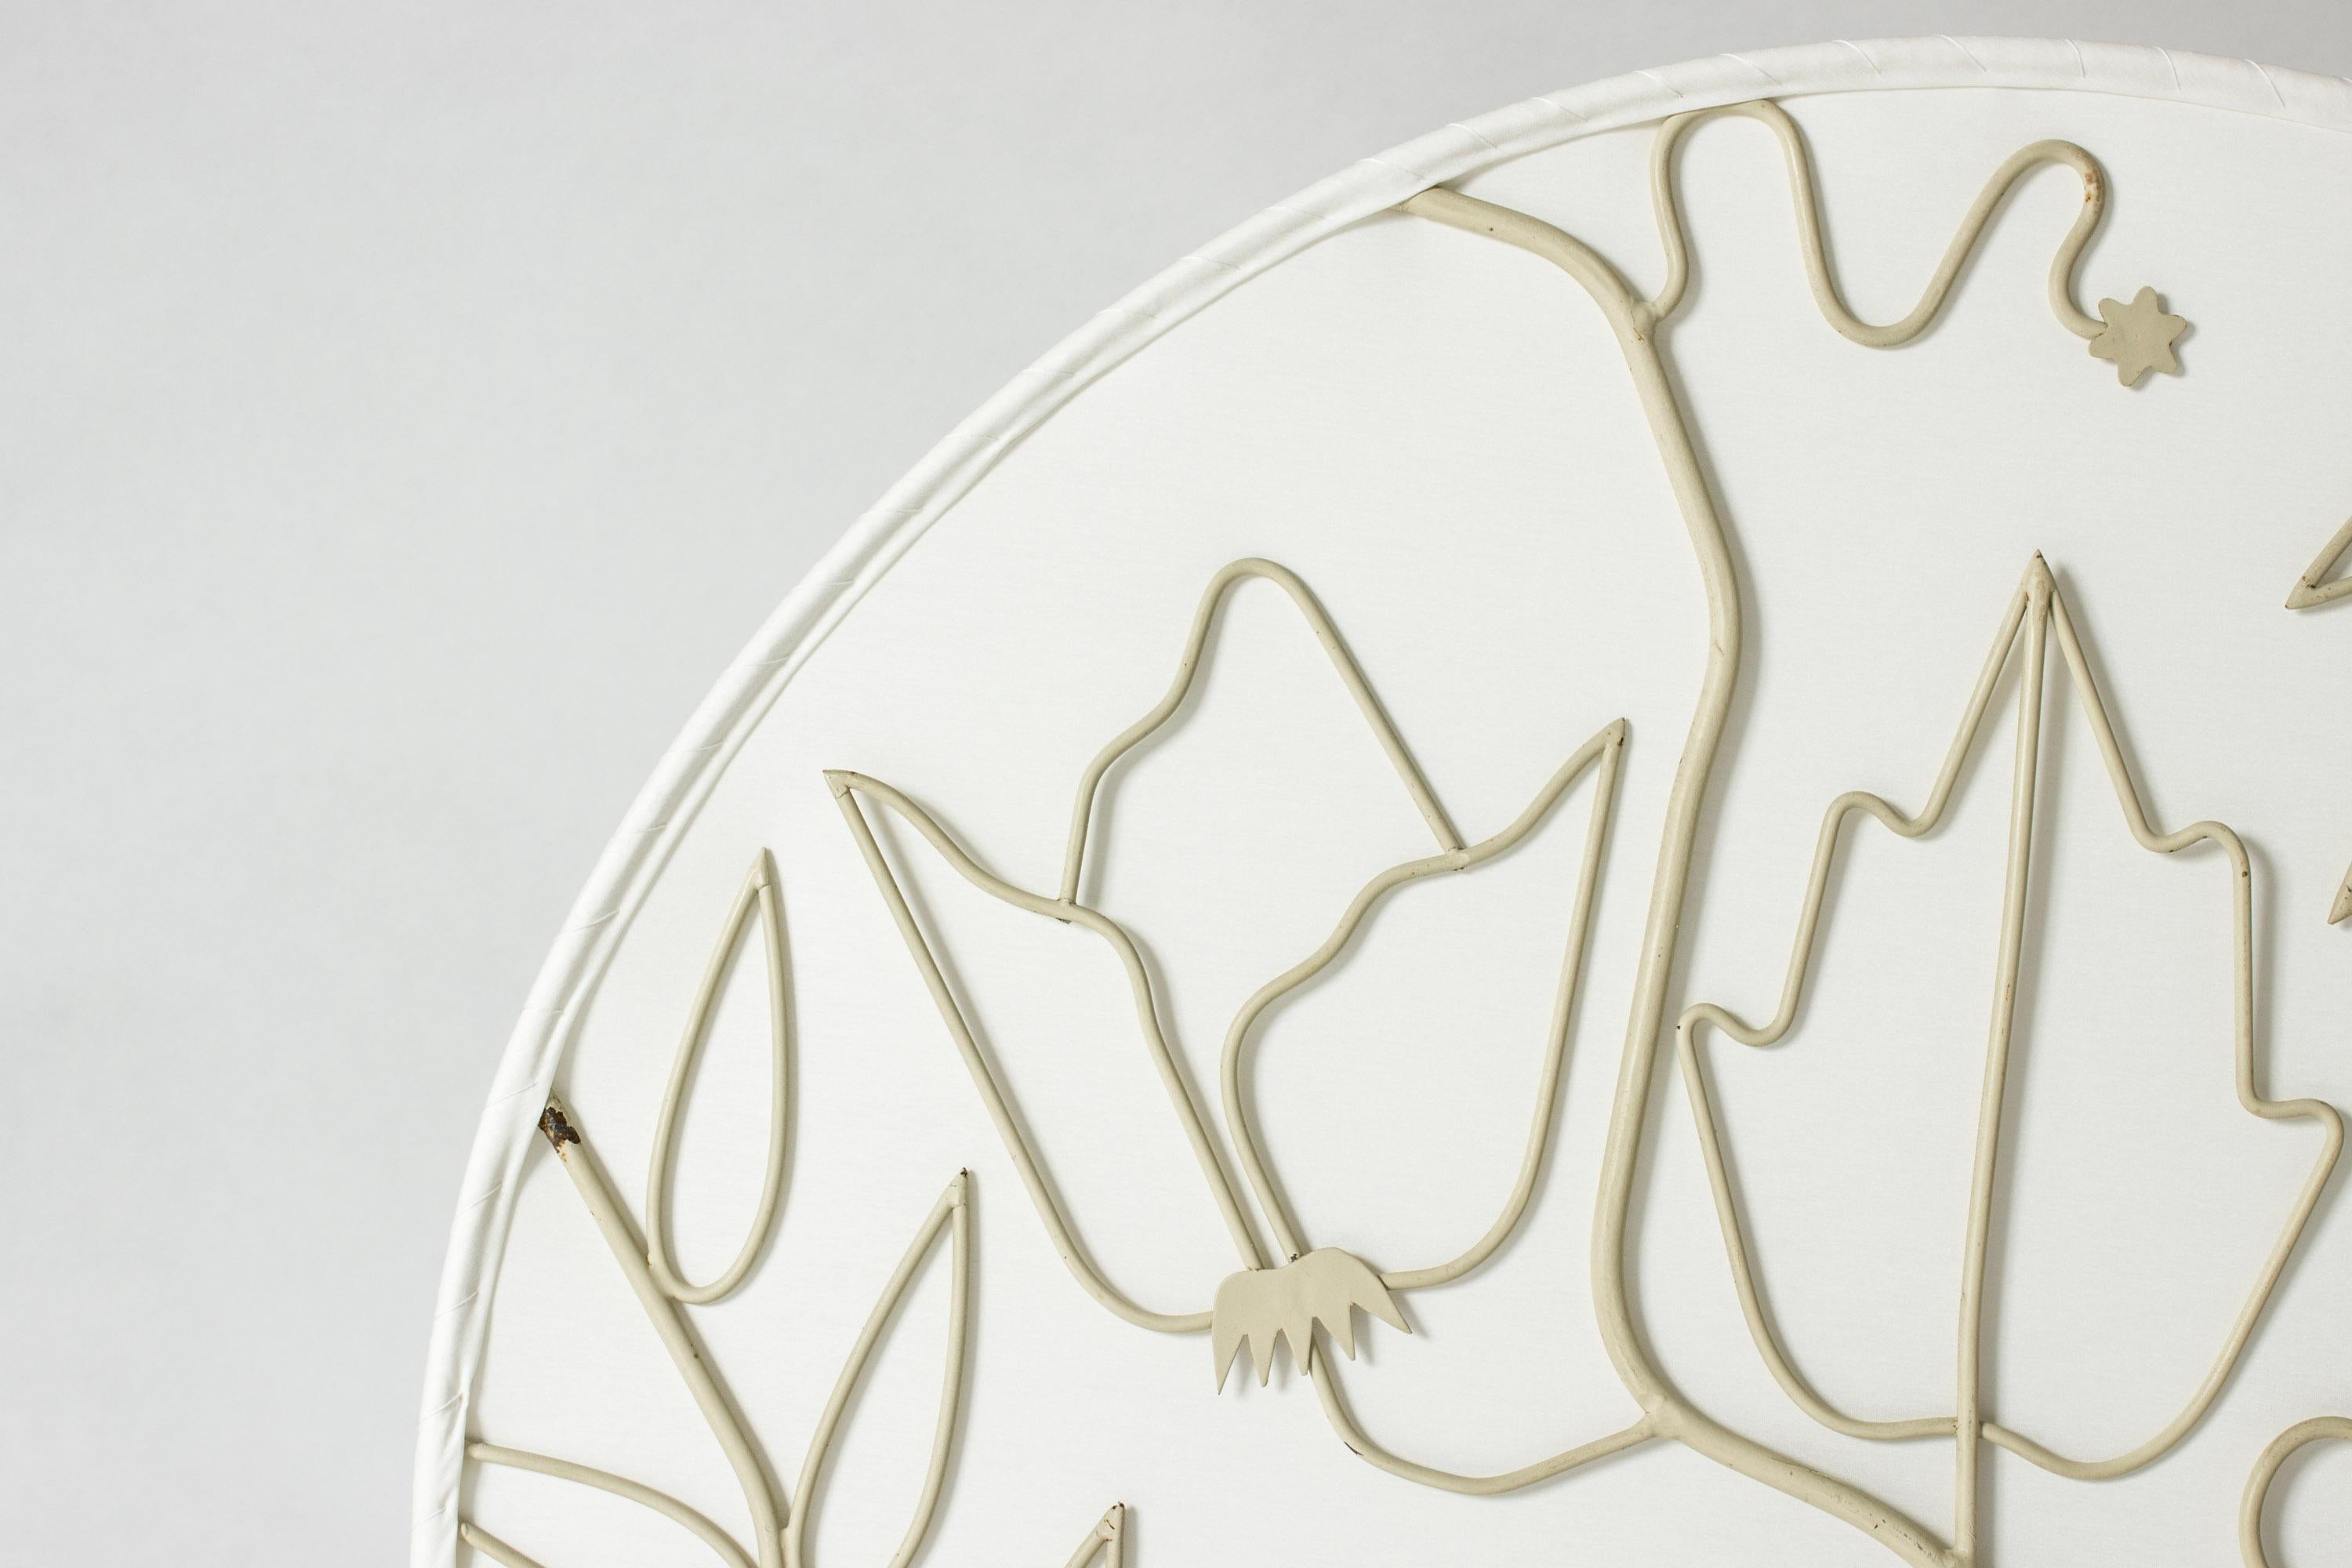 Seltene und schöne bündige Deckenleuchte von Hans Bergström. Der runde, lackierte Rahmen ist mit einem luftigen Muster aus Blumen und Blättern versehen, die einen Schatteneffekt auf dem Seidenstoff erzeugen. Gleichgewicht zwischen Poesie und Eleganz.